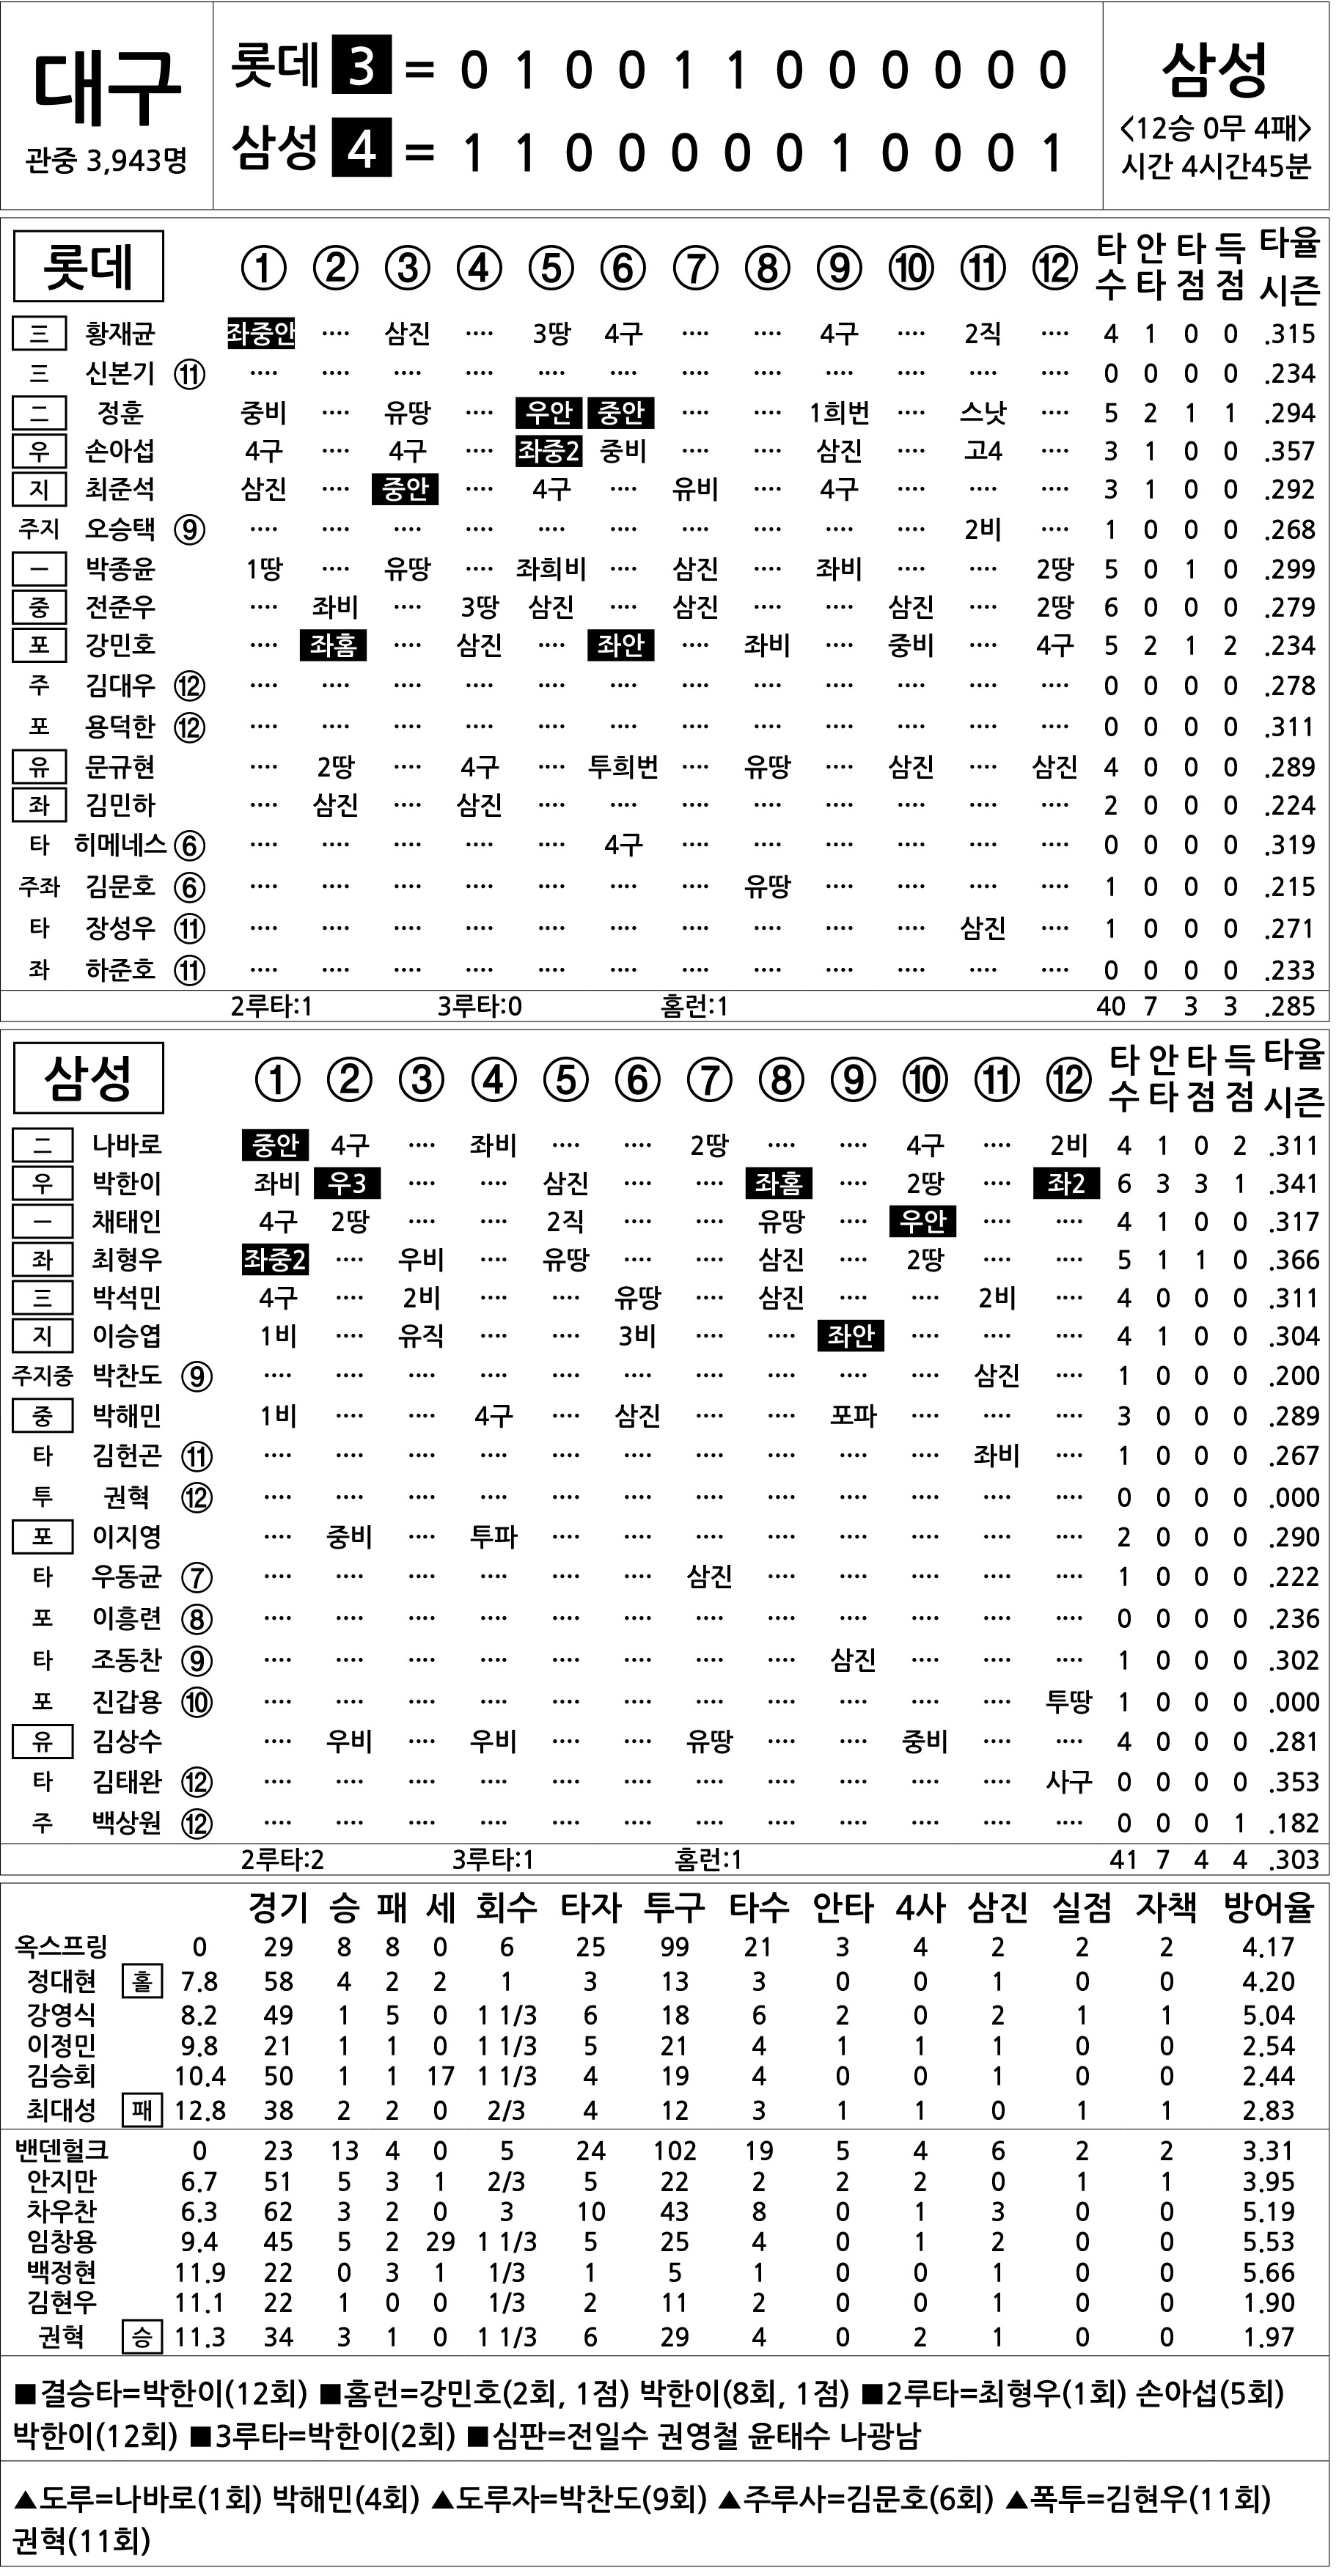  롯데 vs 삼성 (10월 1일)